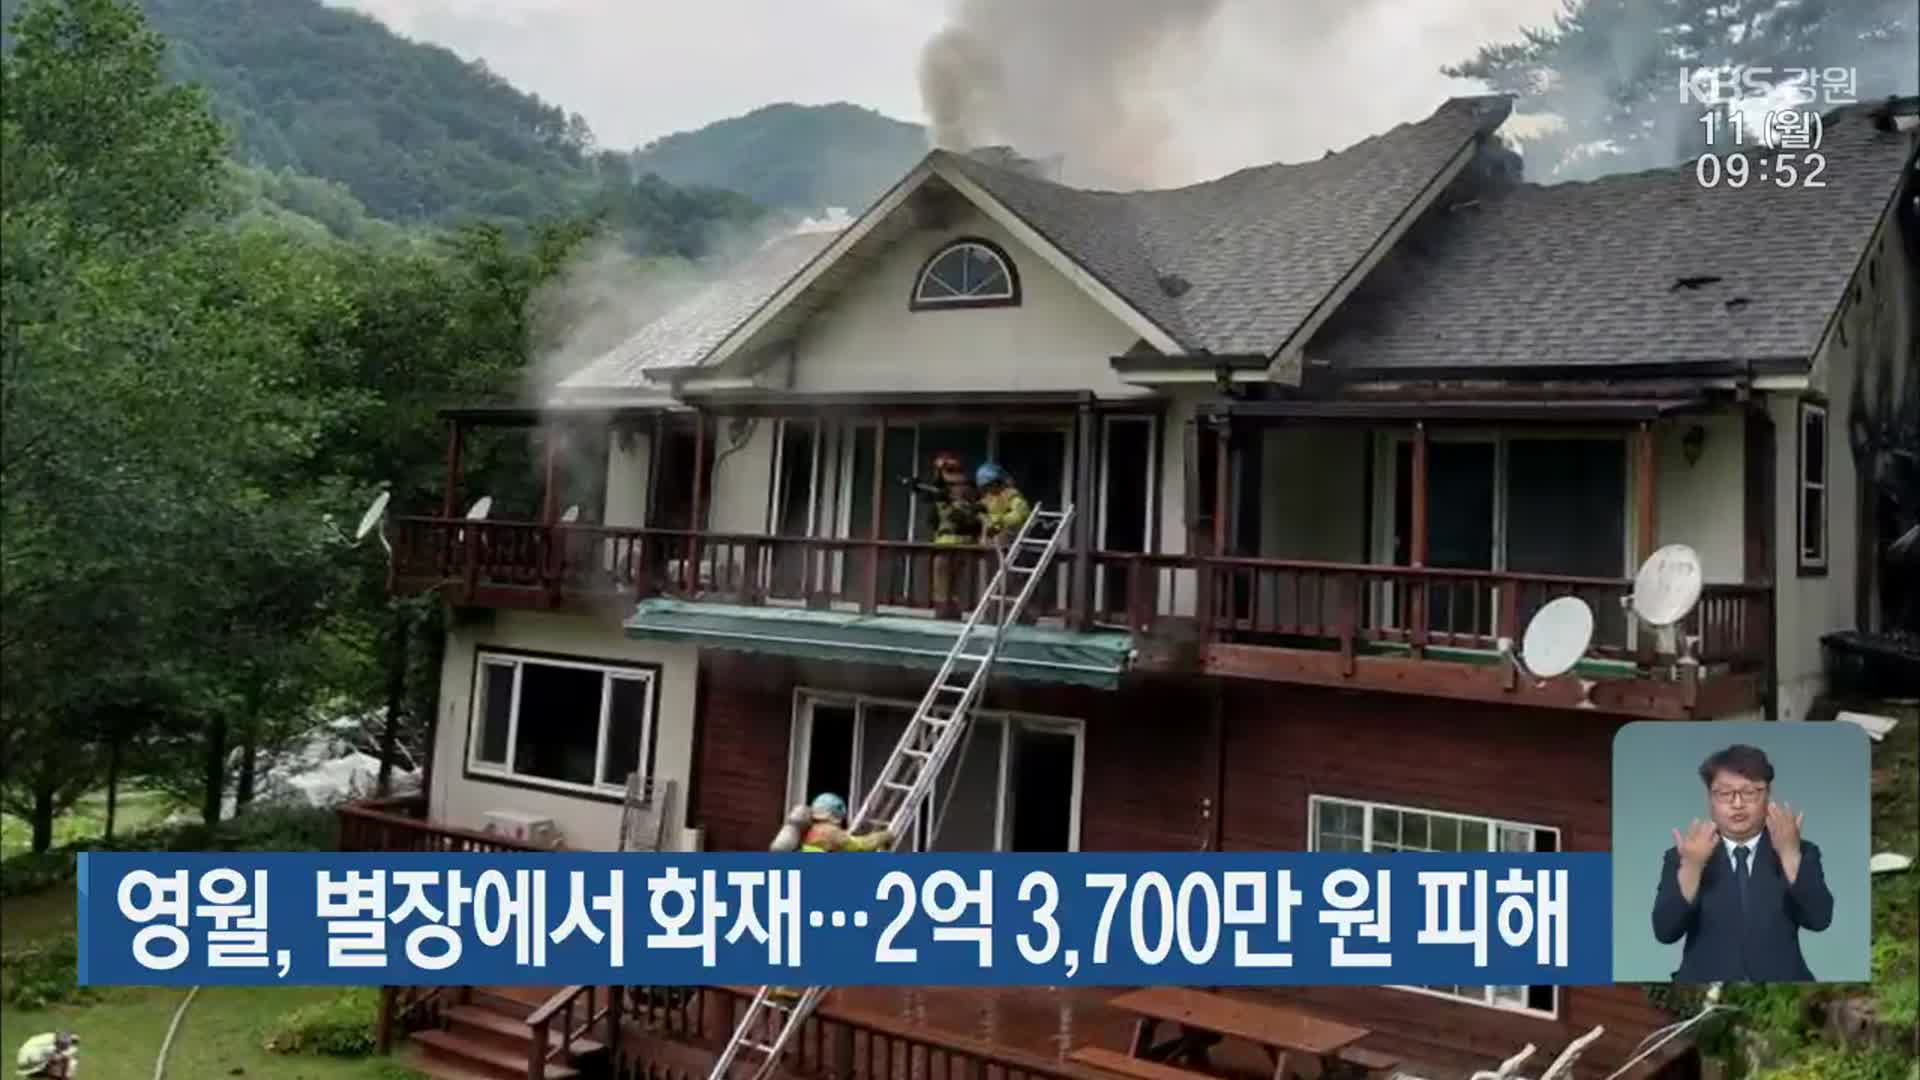 영월, 별장에서 화재…2억 3,700만 원 피해